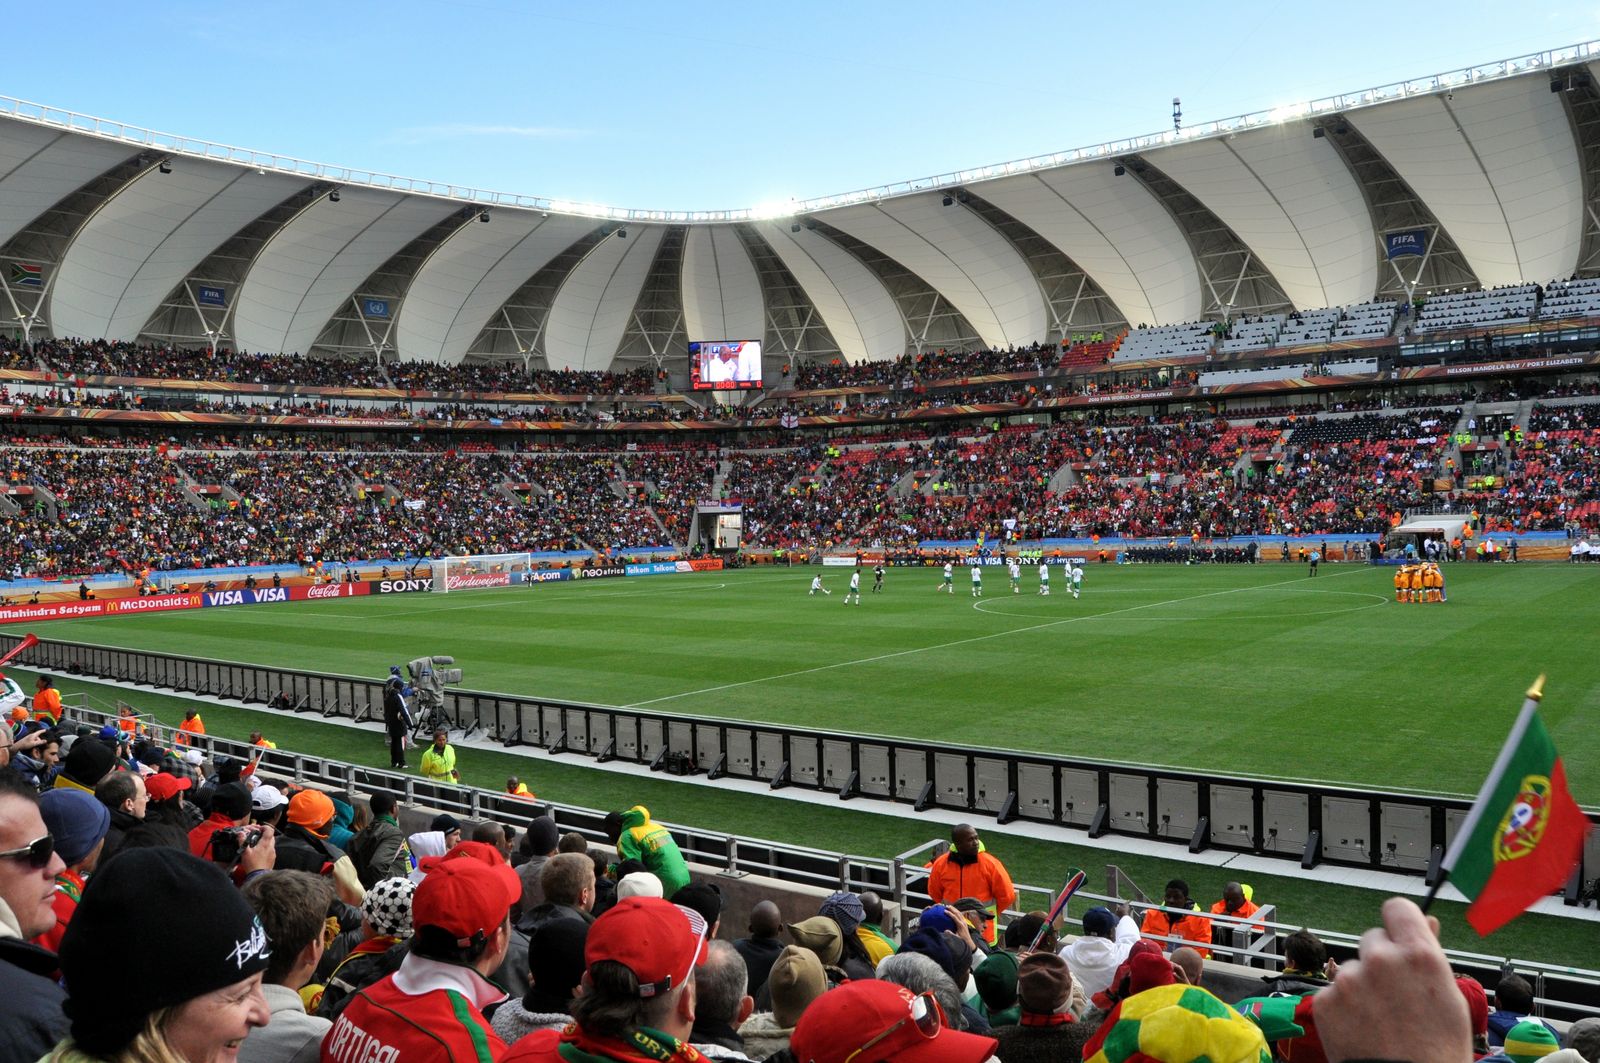 15.06.2010 ©. Nelson Mandela Bay Stadium: 1063x1600px, 343 kB. 